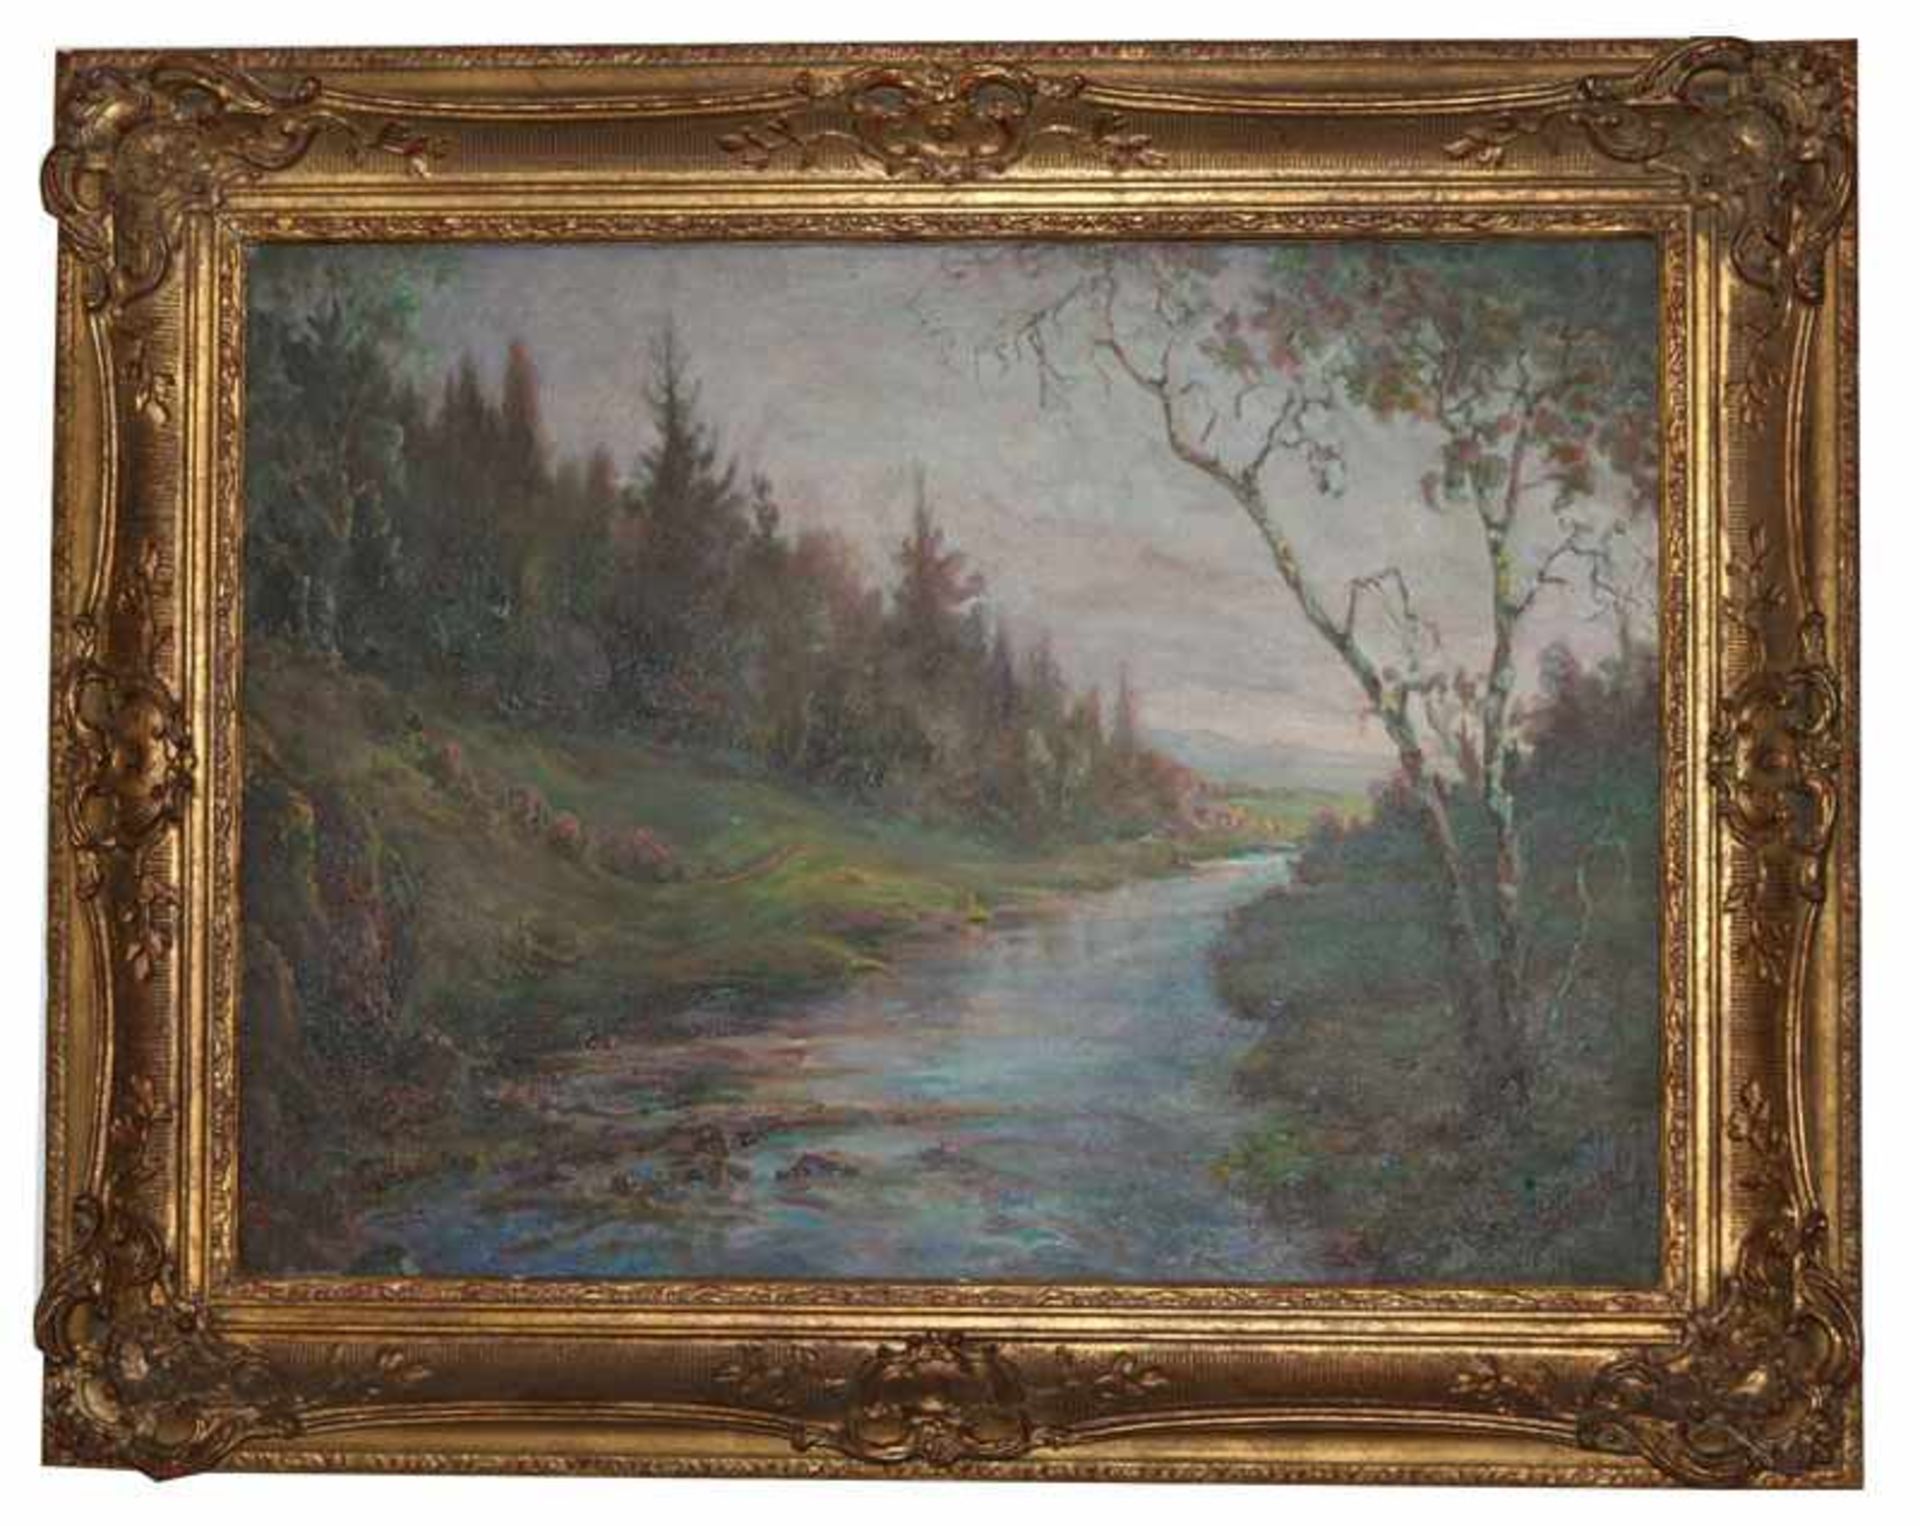 Gemälde ÖL/LW 'Landschafts-Szenerie mit Bachlauf', kyrillisch signiert, datiert 47, stilvoll